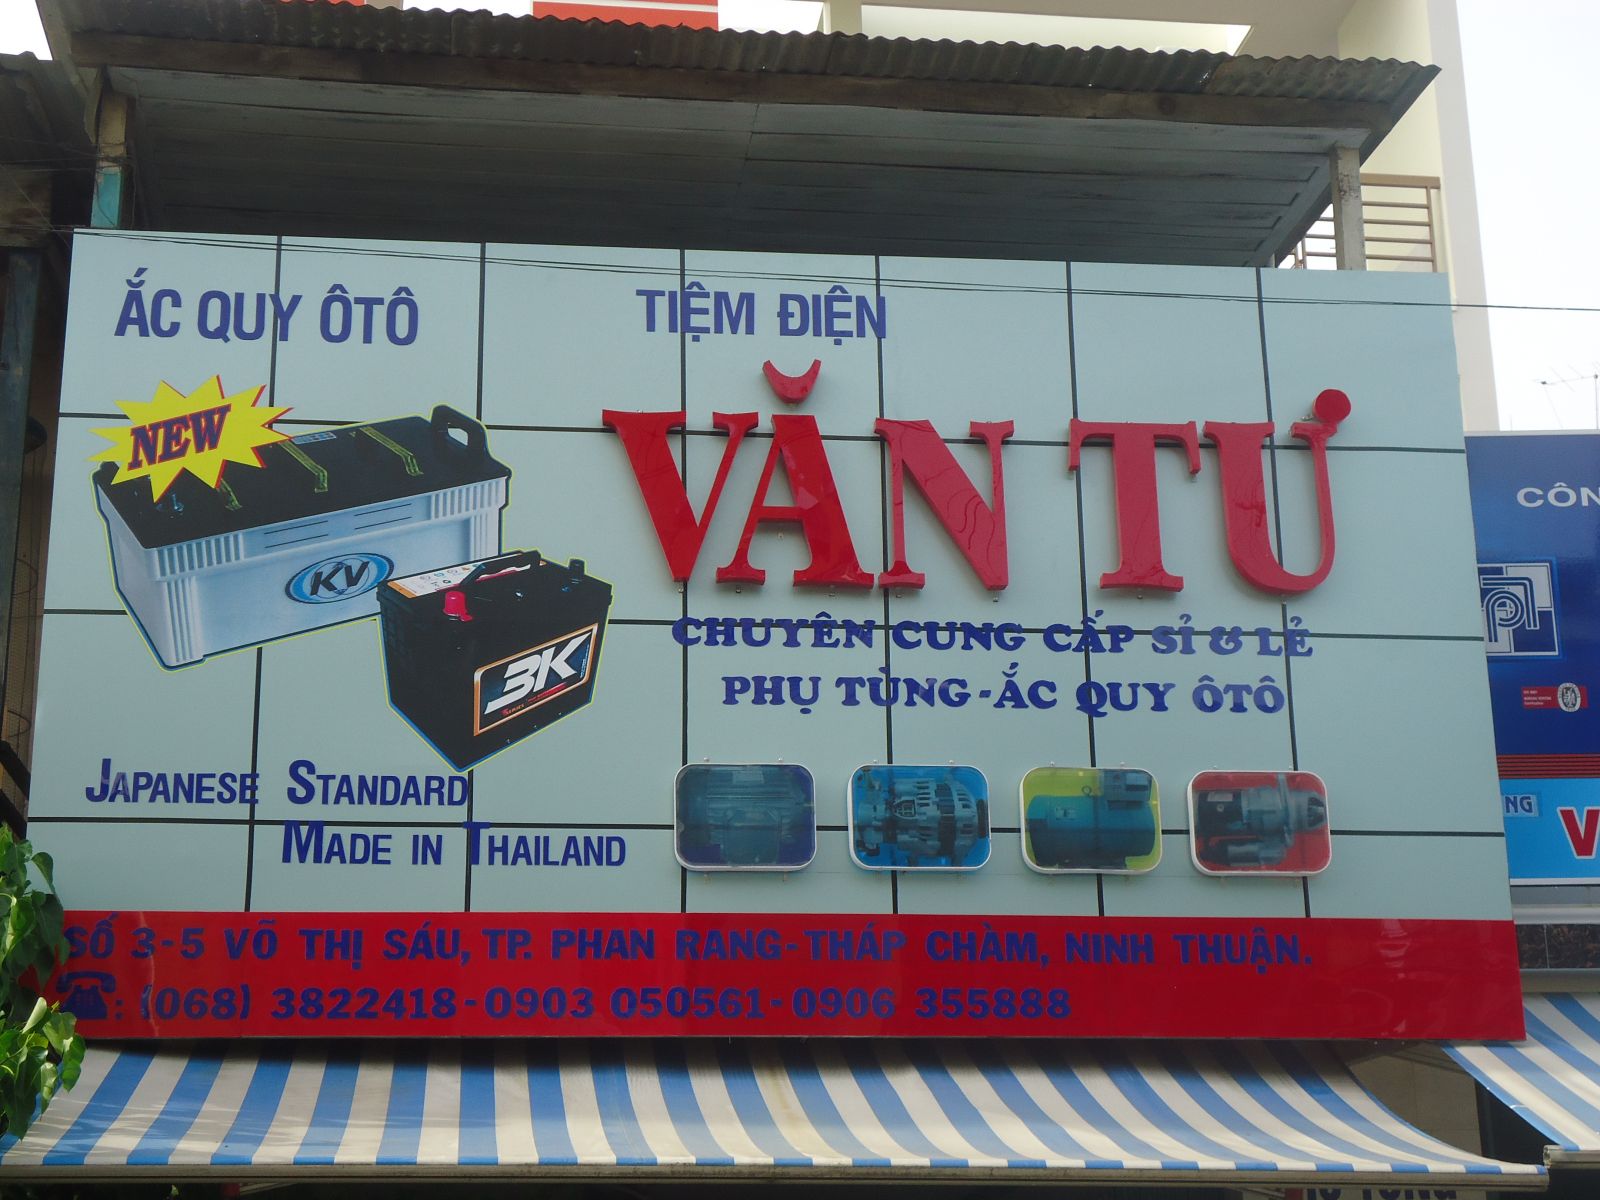 Bảng hiệu ắc quy Tiệm Điện Văn Tư tại TP Phan Rang